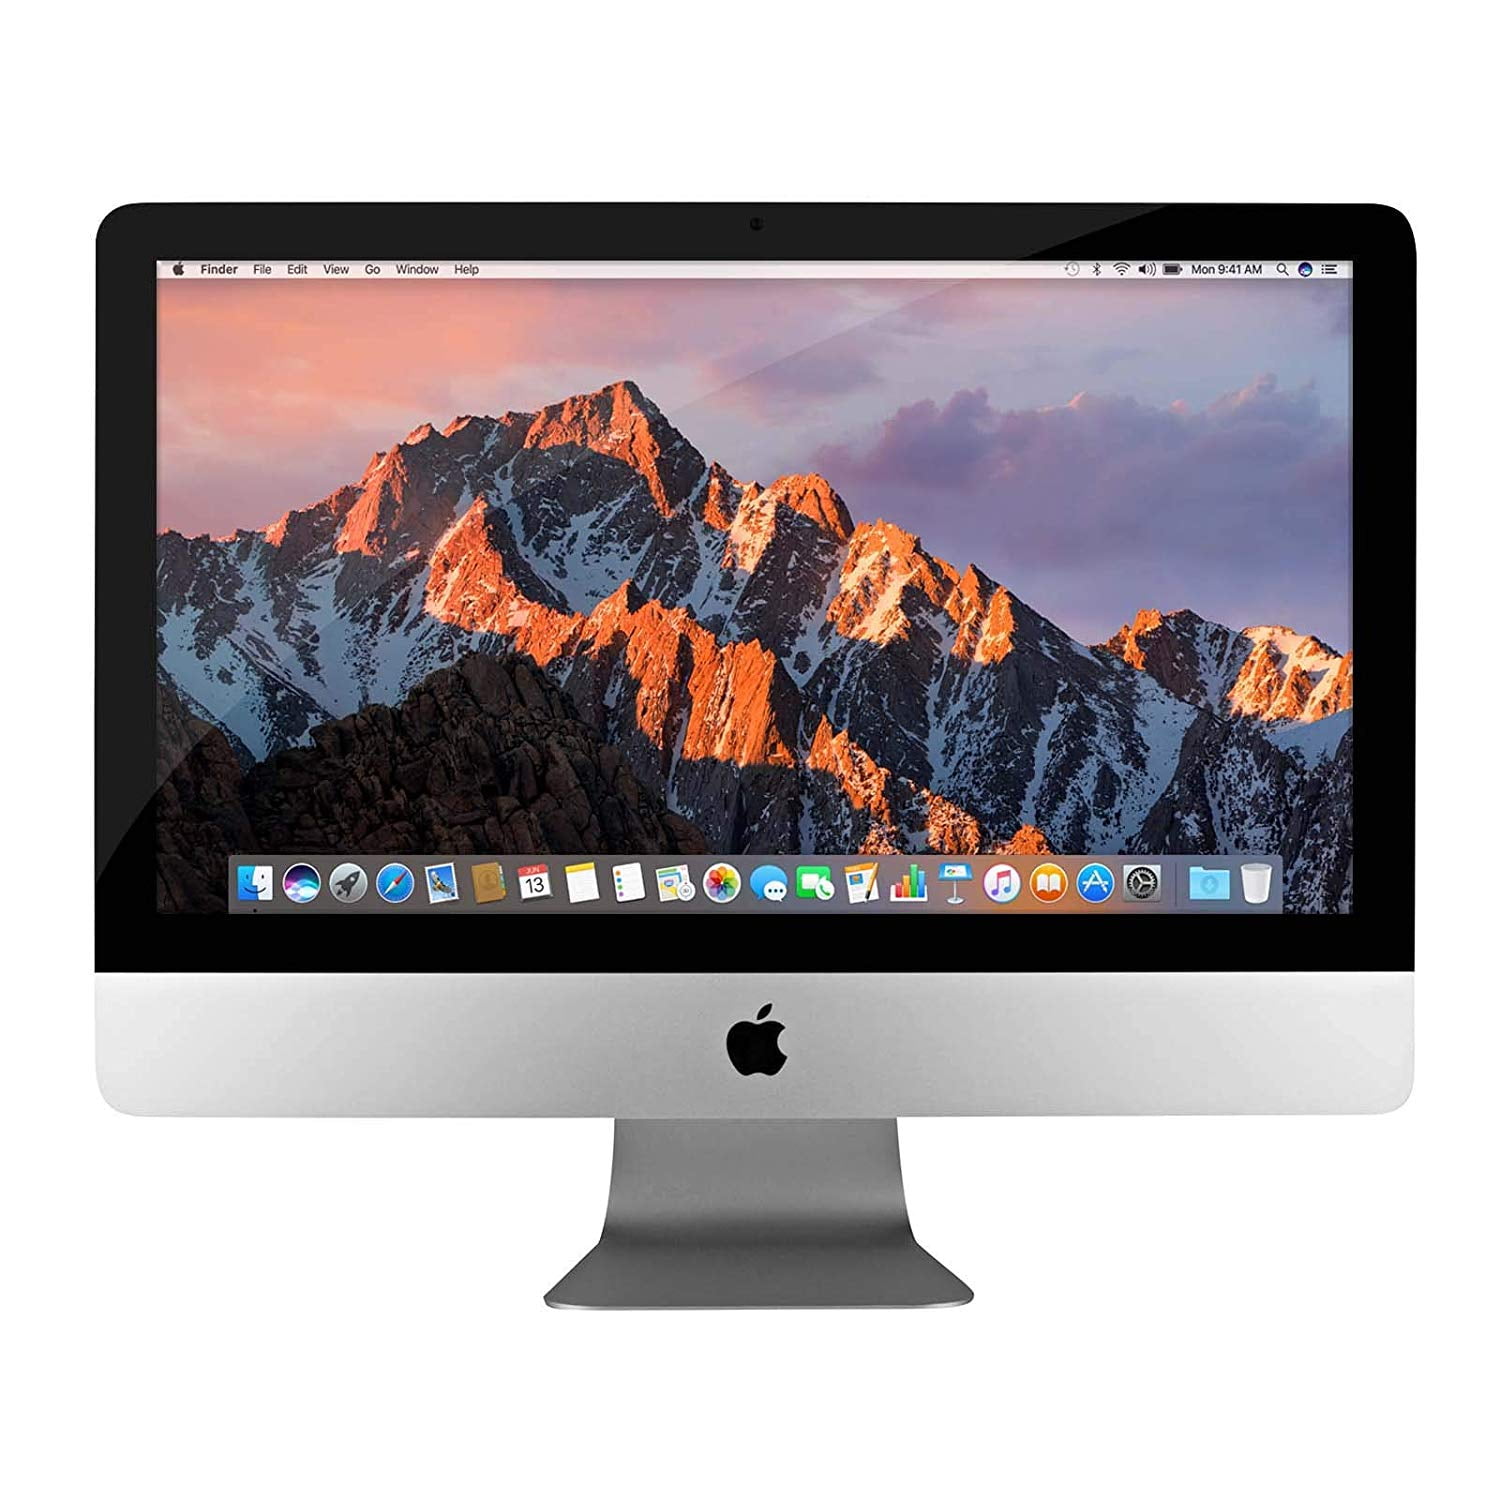 iMac 2013年モデル 21.5インチ - デスクトップ型PC